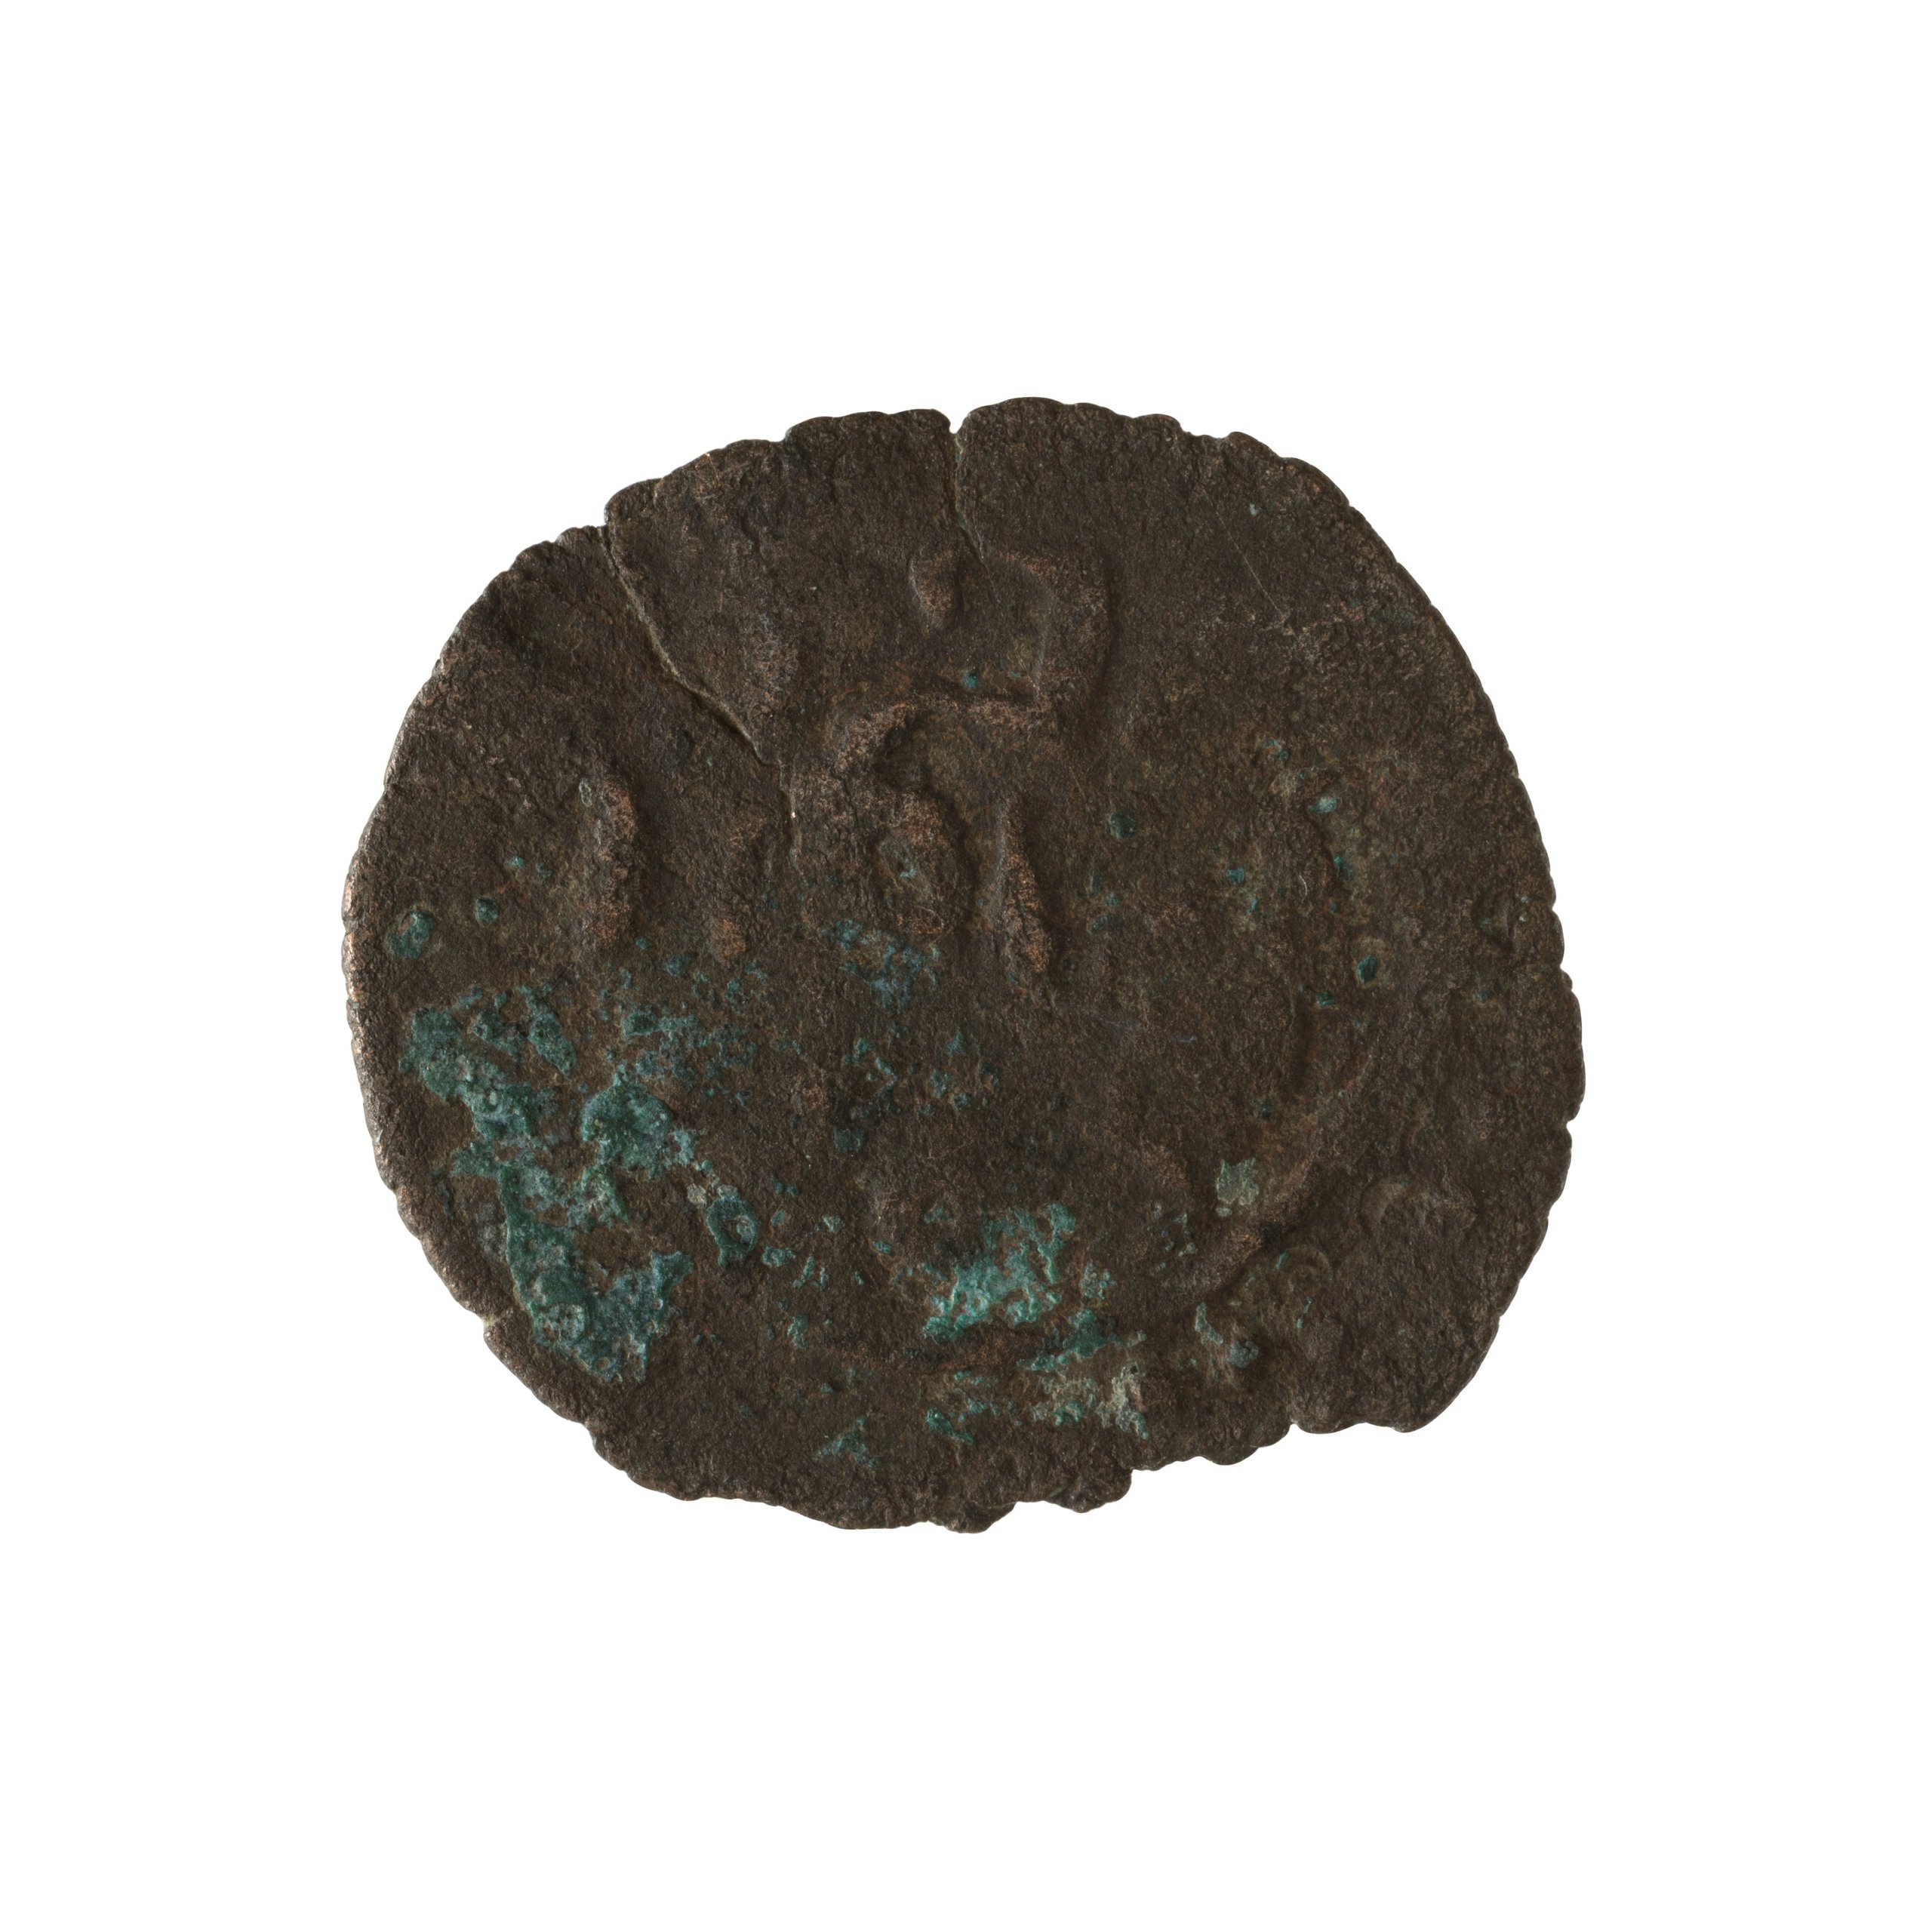 Kilwa Sultanate Falus coin